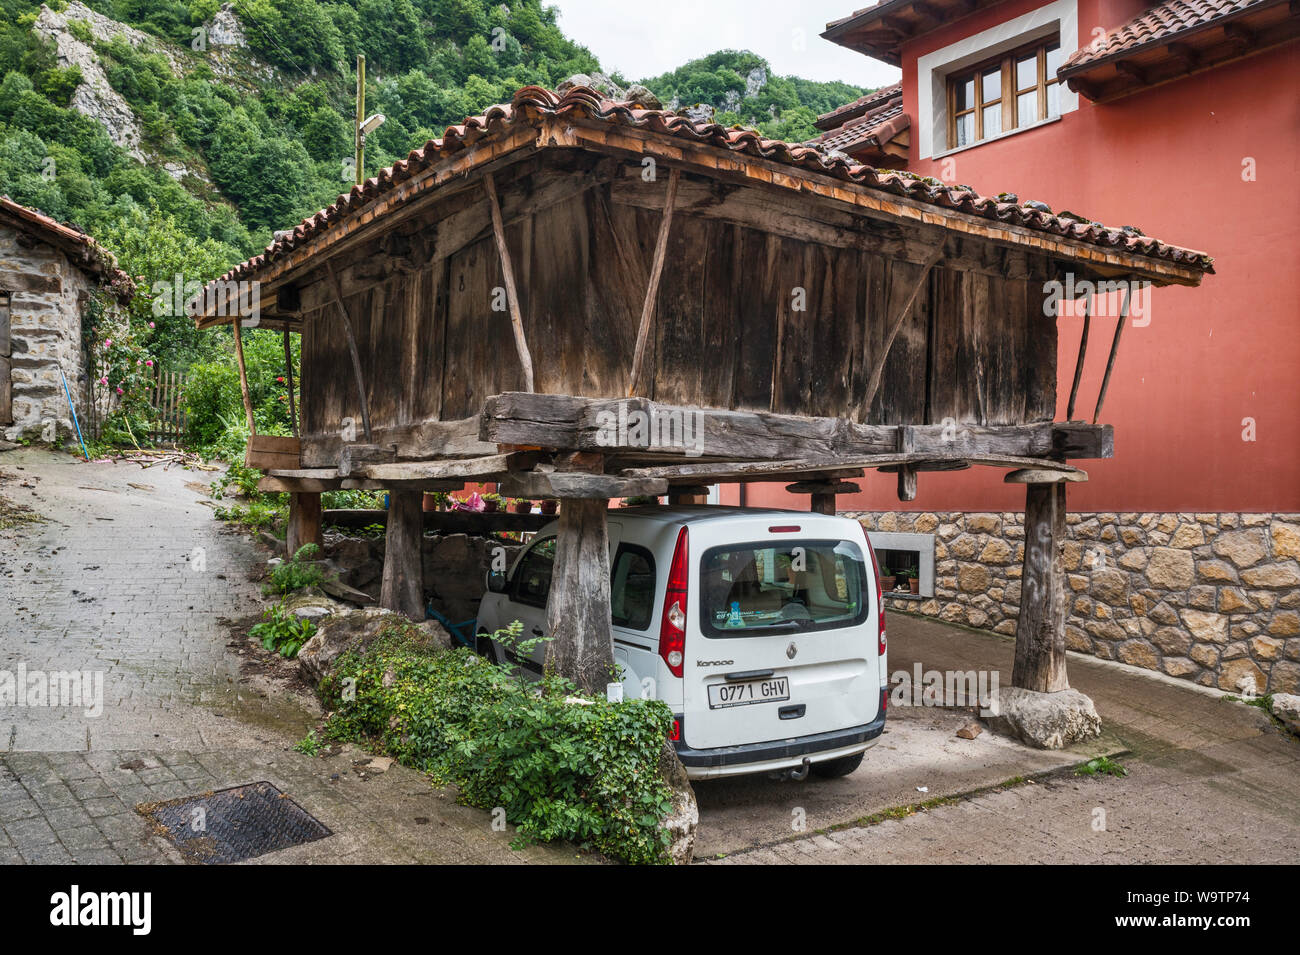 Macchina parcheggiata sotto un horreo, sollevata tradizionale granaio, nel villaggio di San Juan de Beleno, ponga parco naturale, Asturias, Spagna Foto Stock